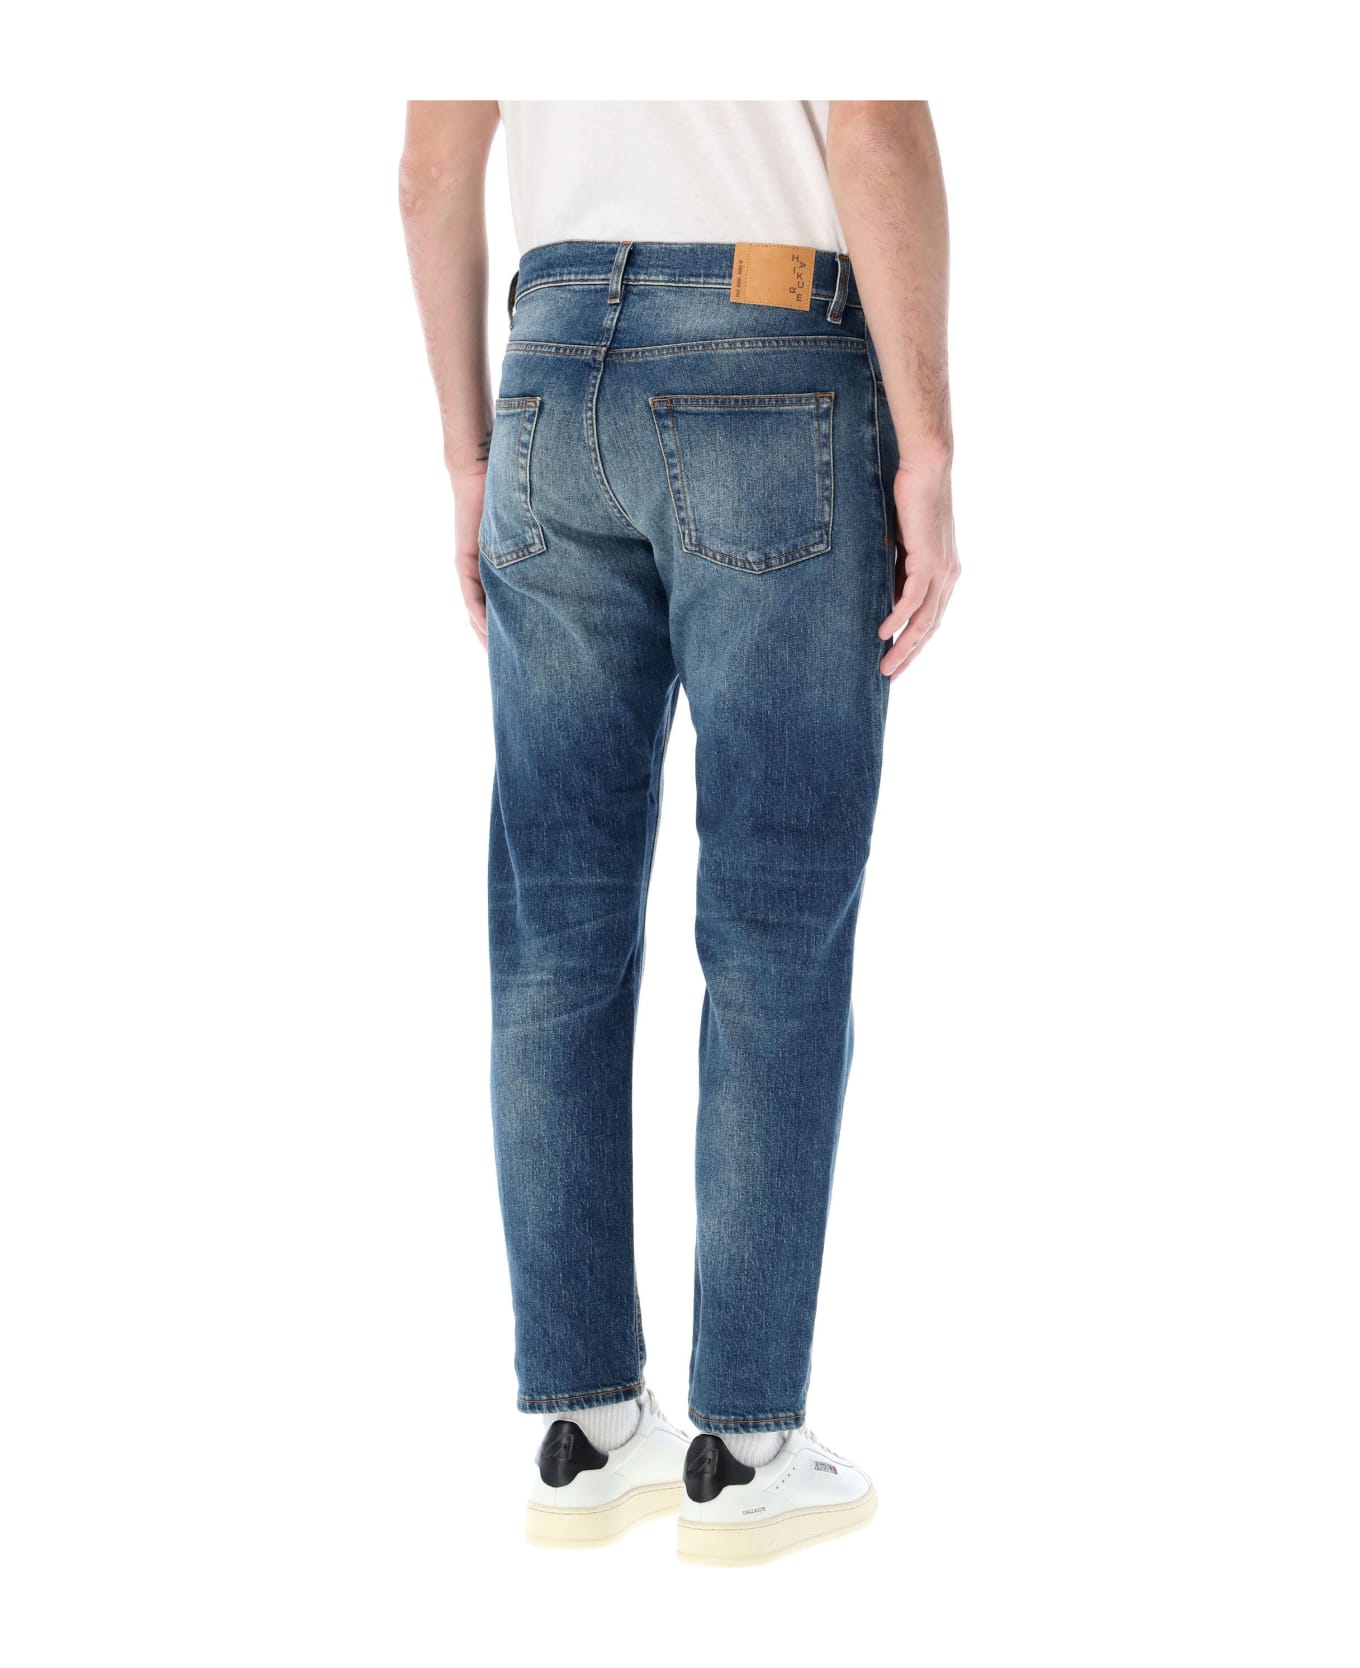 Haikure Tokio Slim Jeans - Basement blue